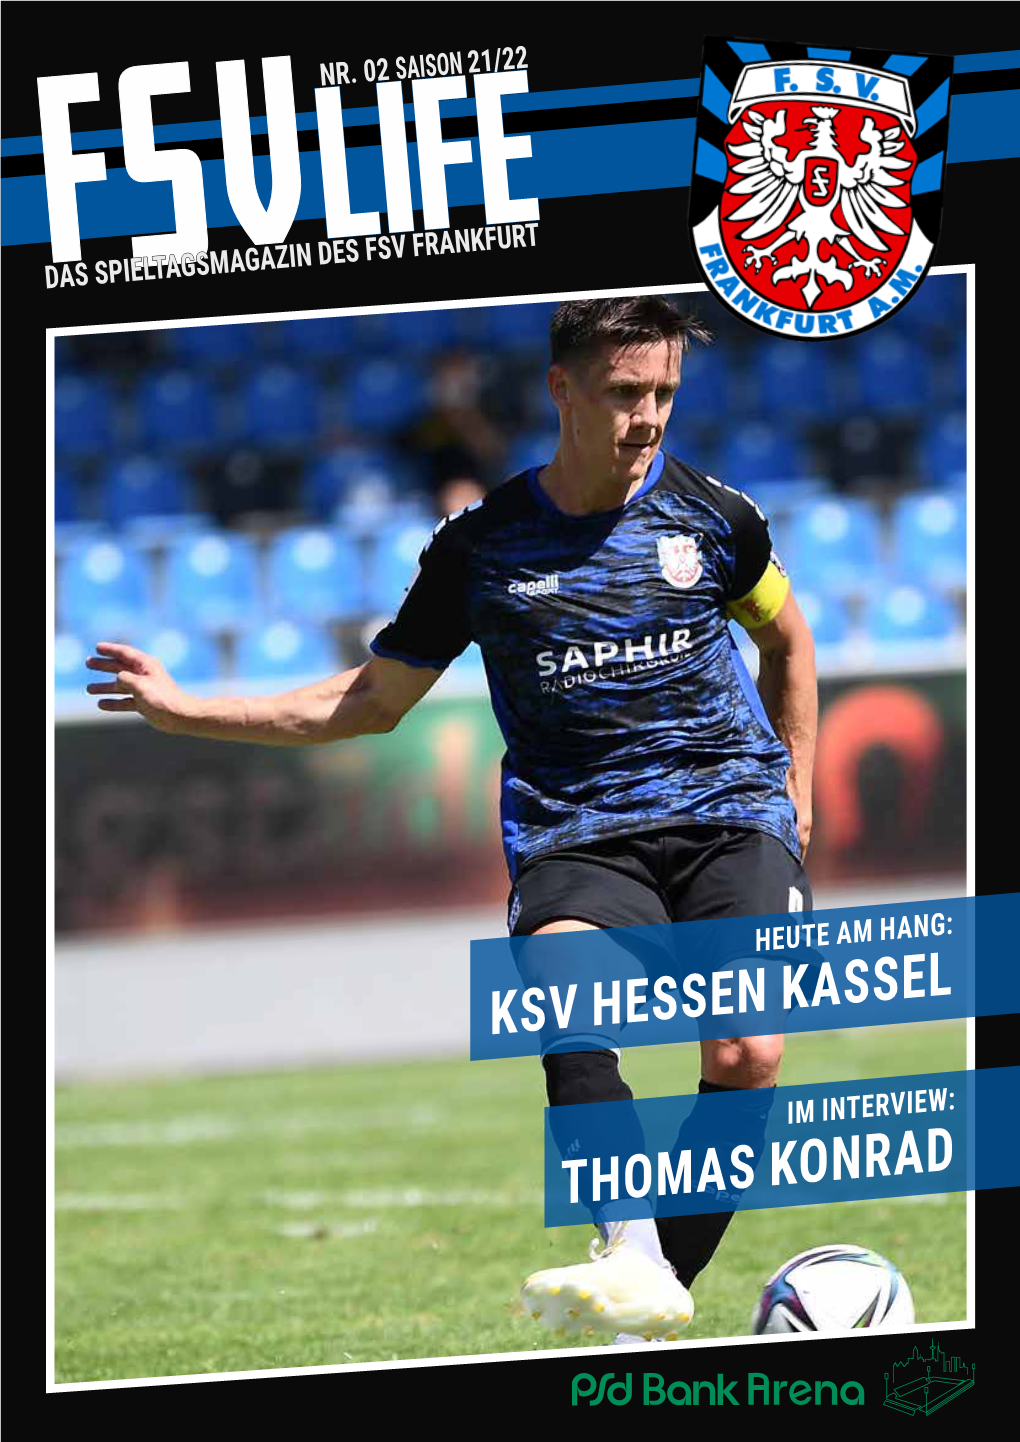 Thomas Konrad Ksv Hessen Kassel